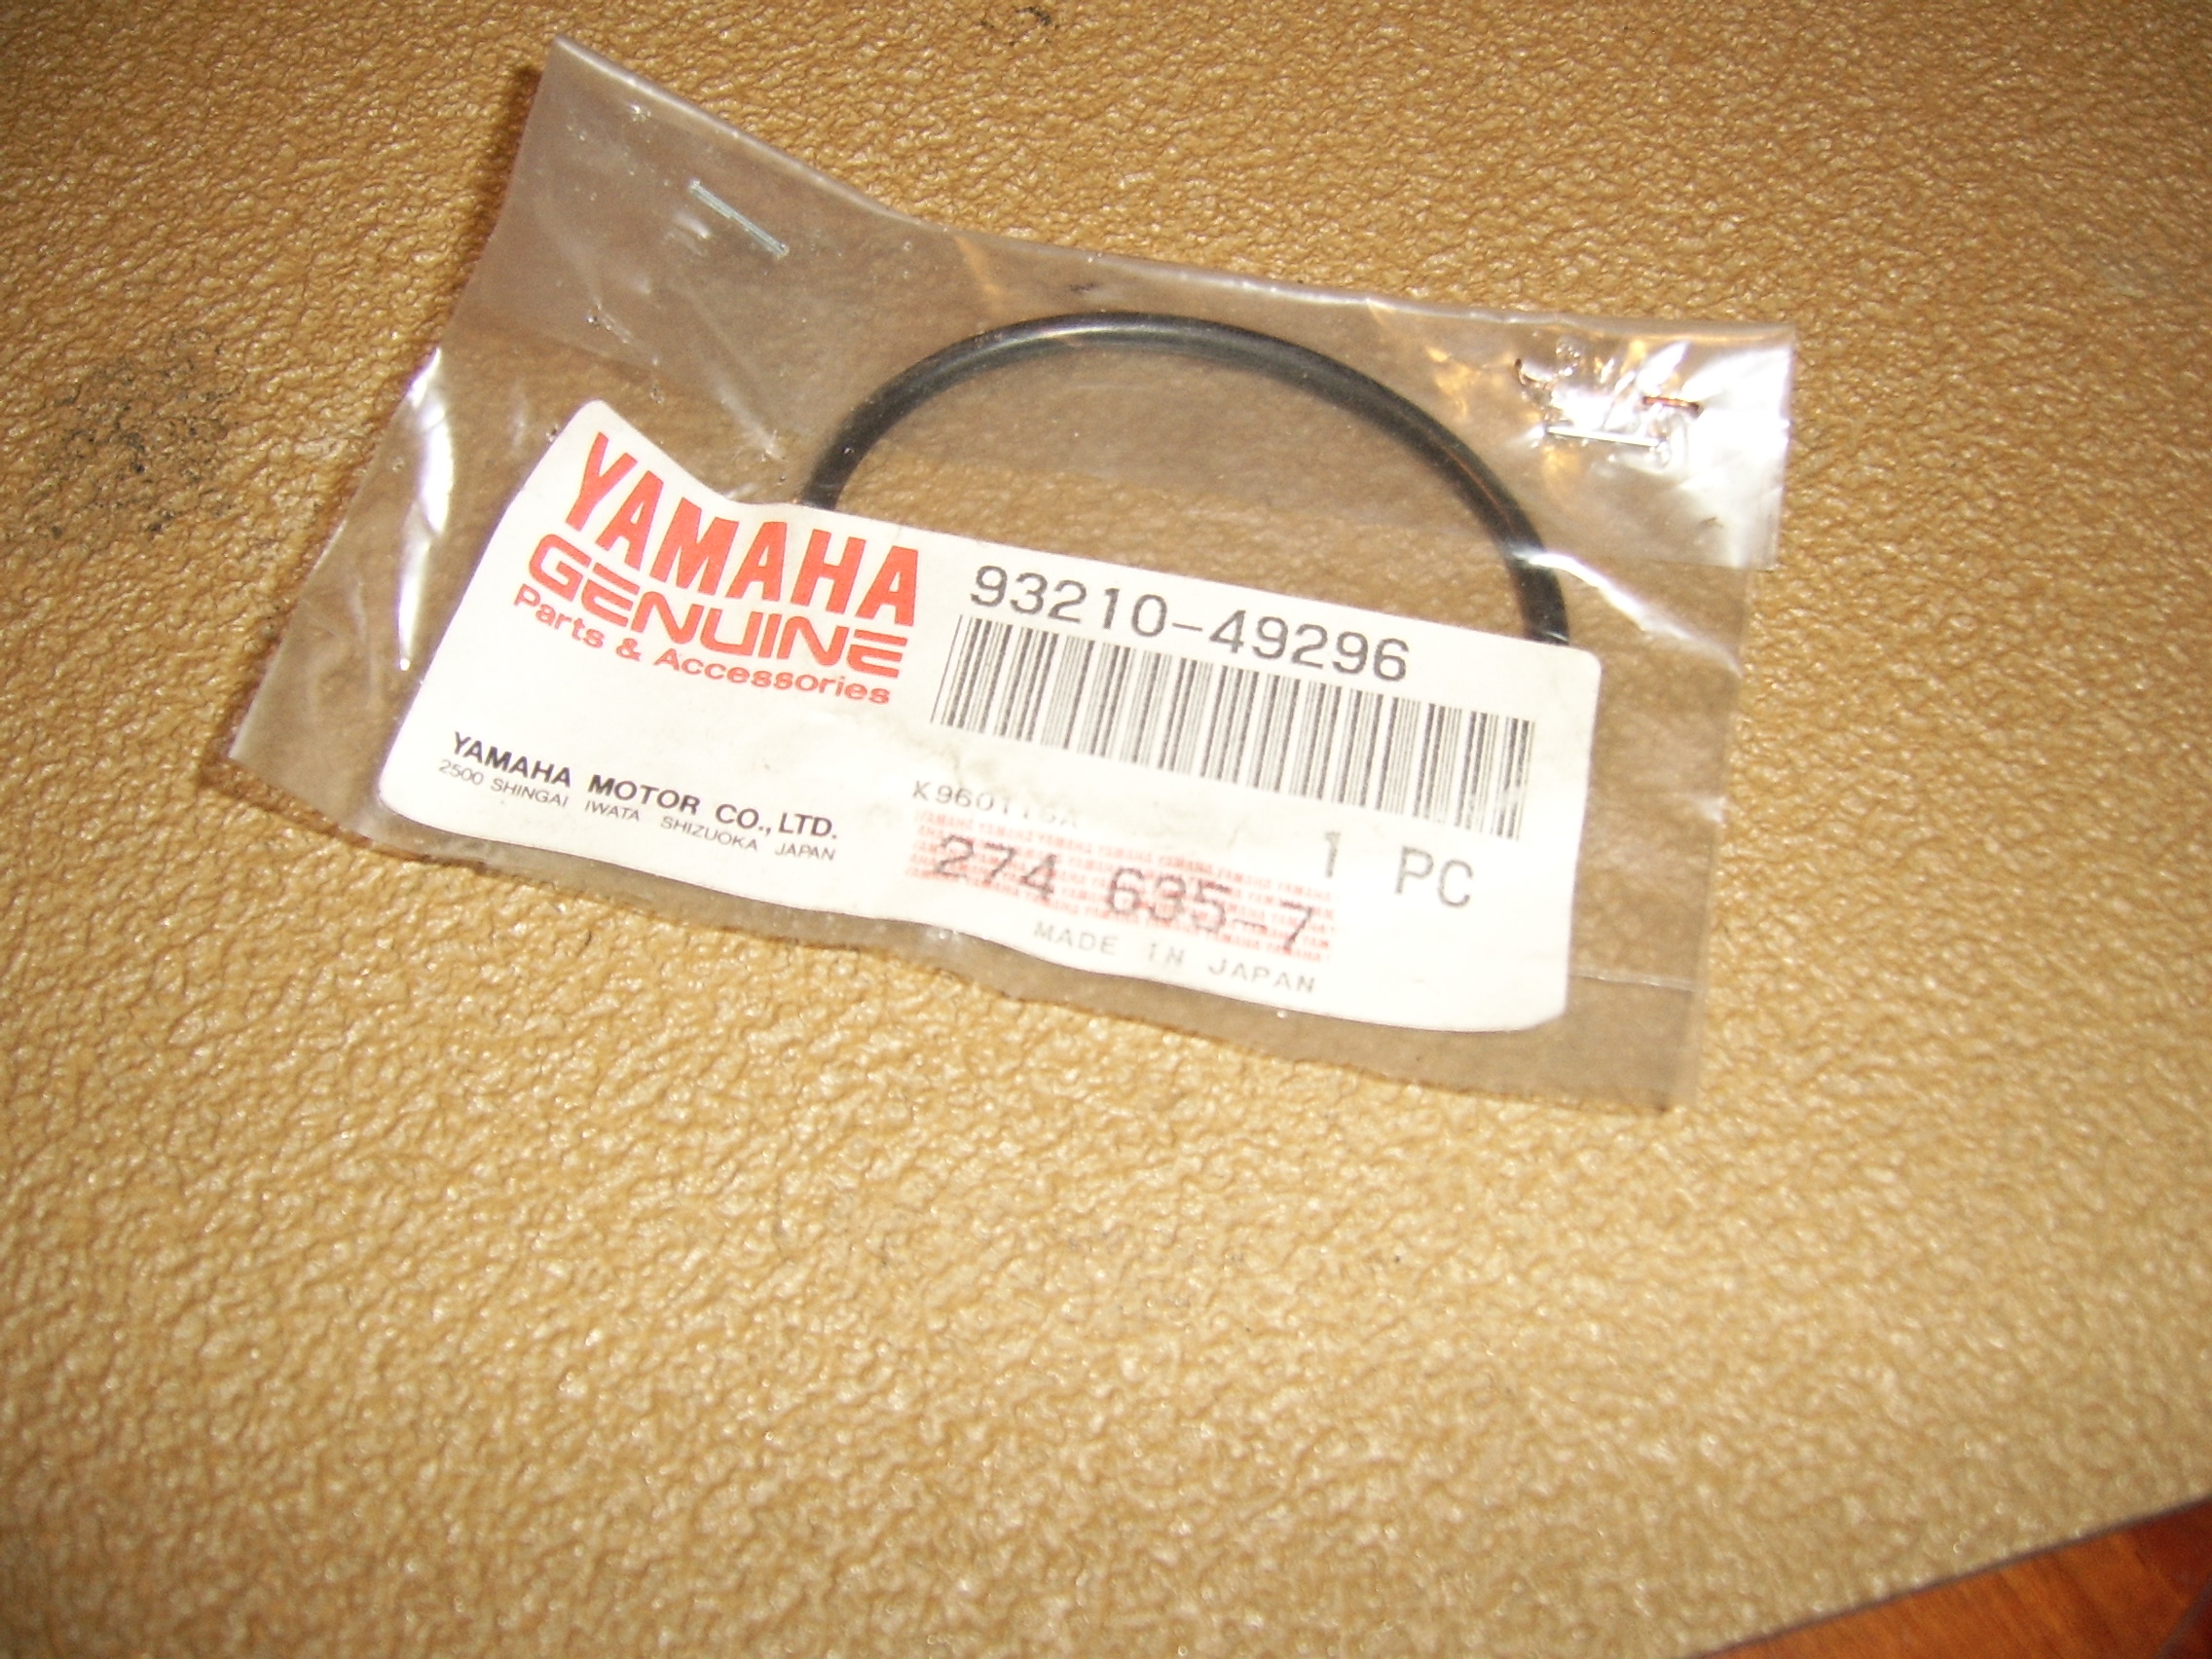 Yamaha-O-ring-93210-49296.jpg